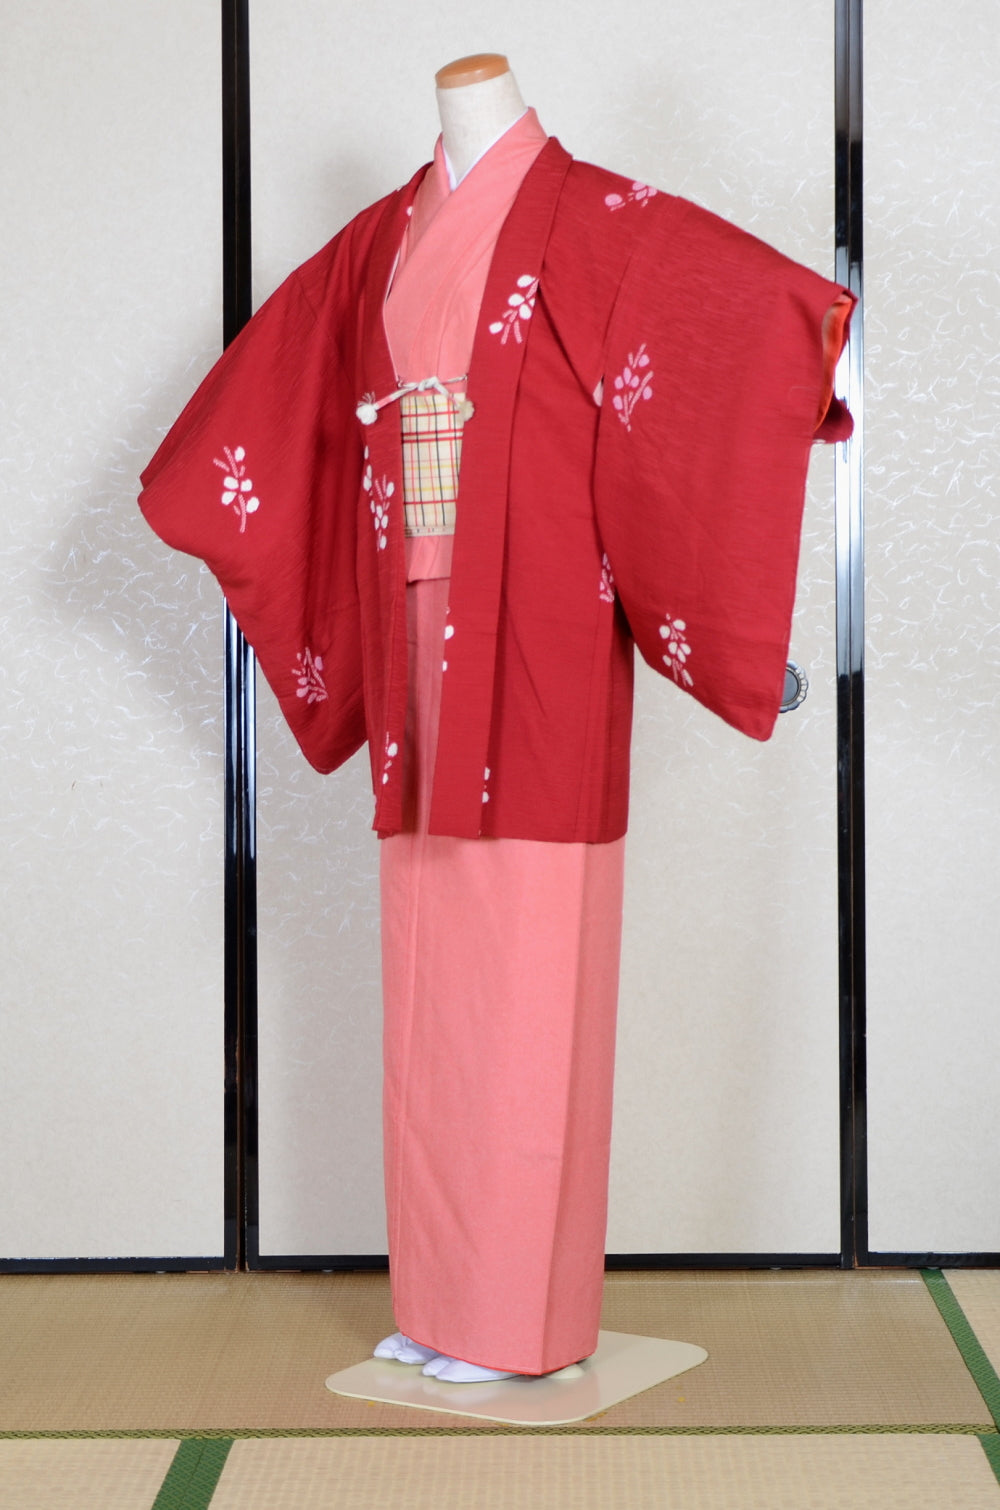 Japanese Cream Floral Black Men's Haori Yukata Kimono Jacket